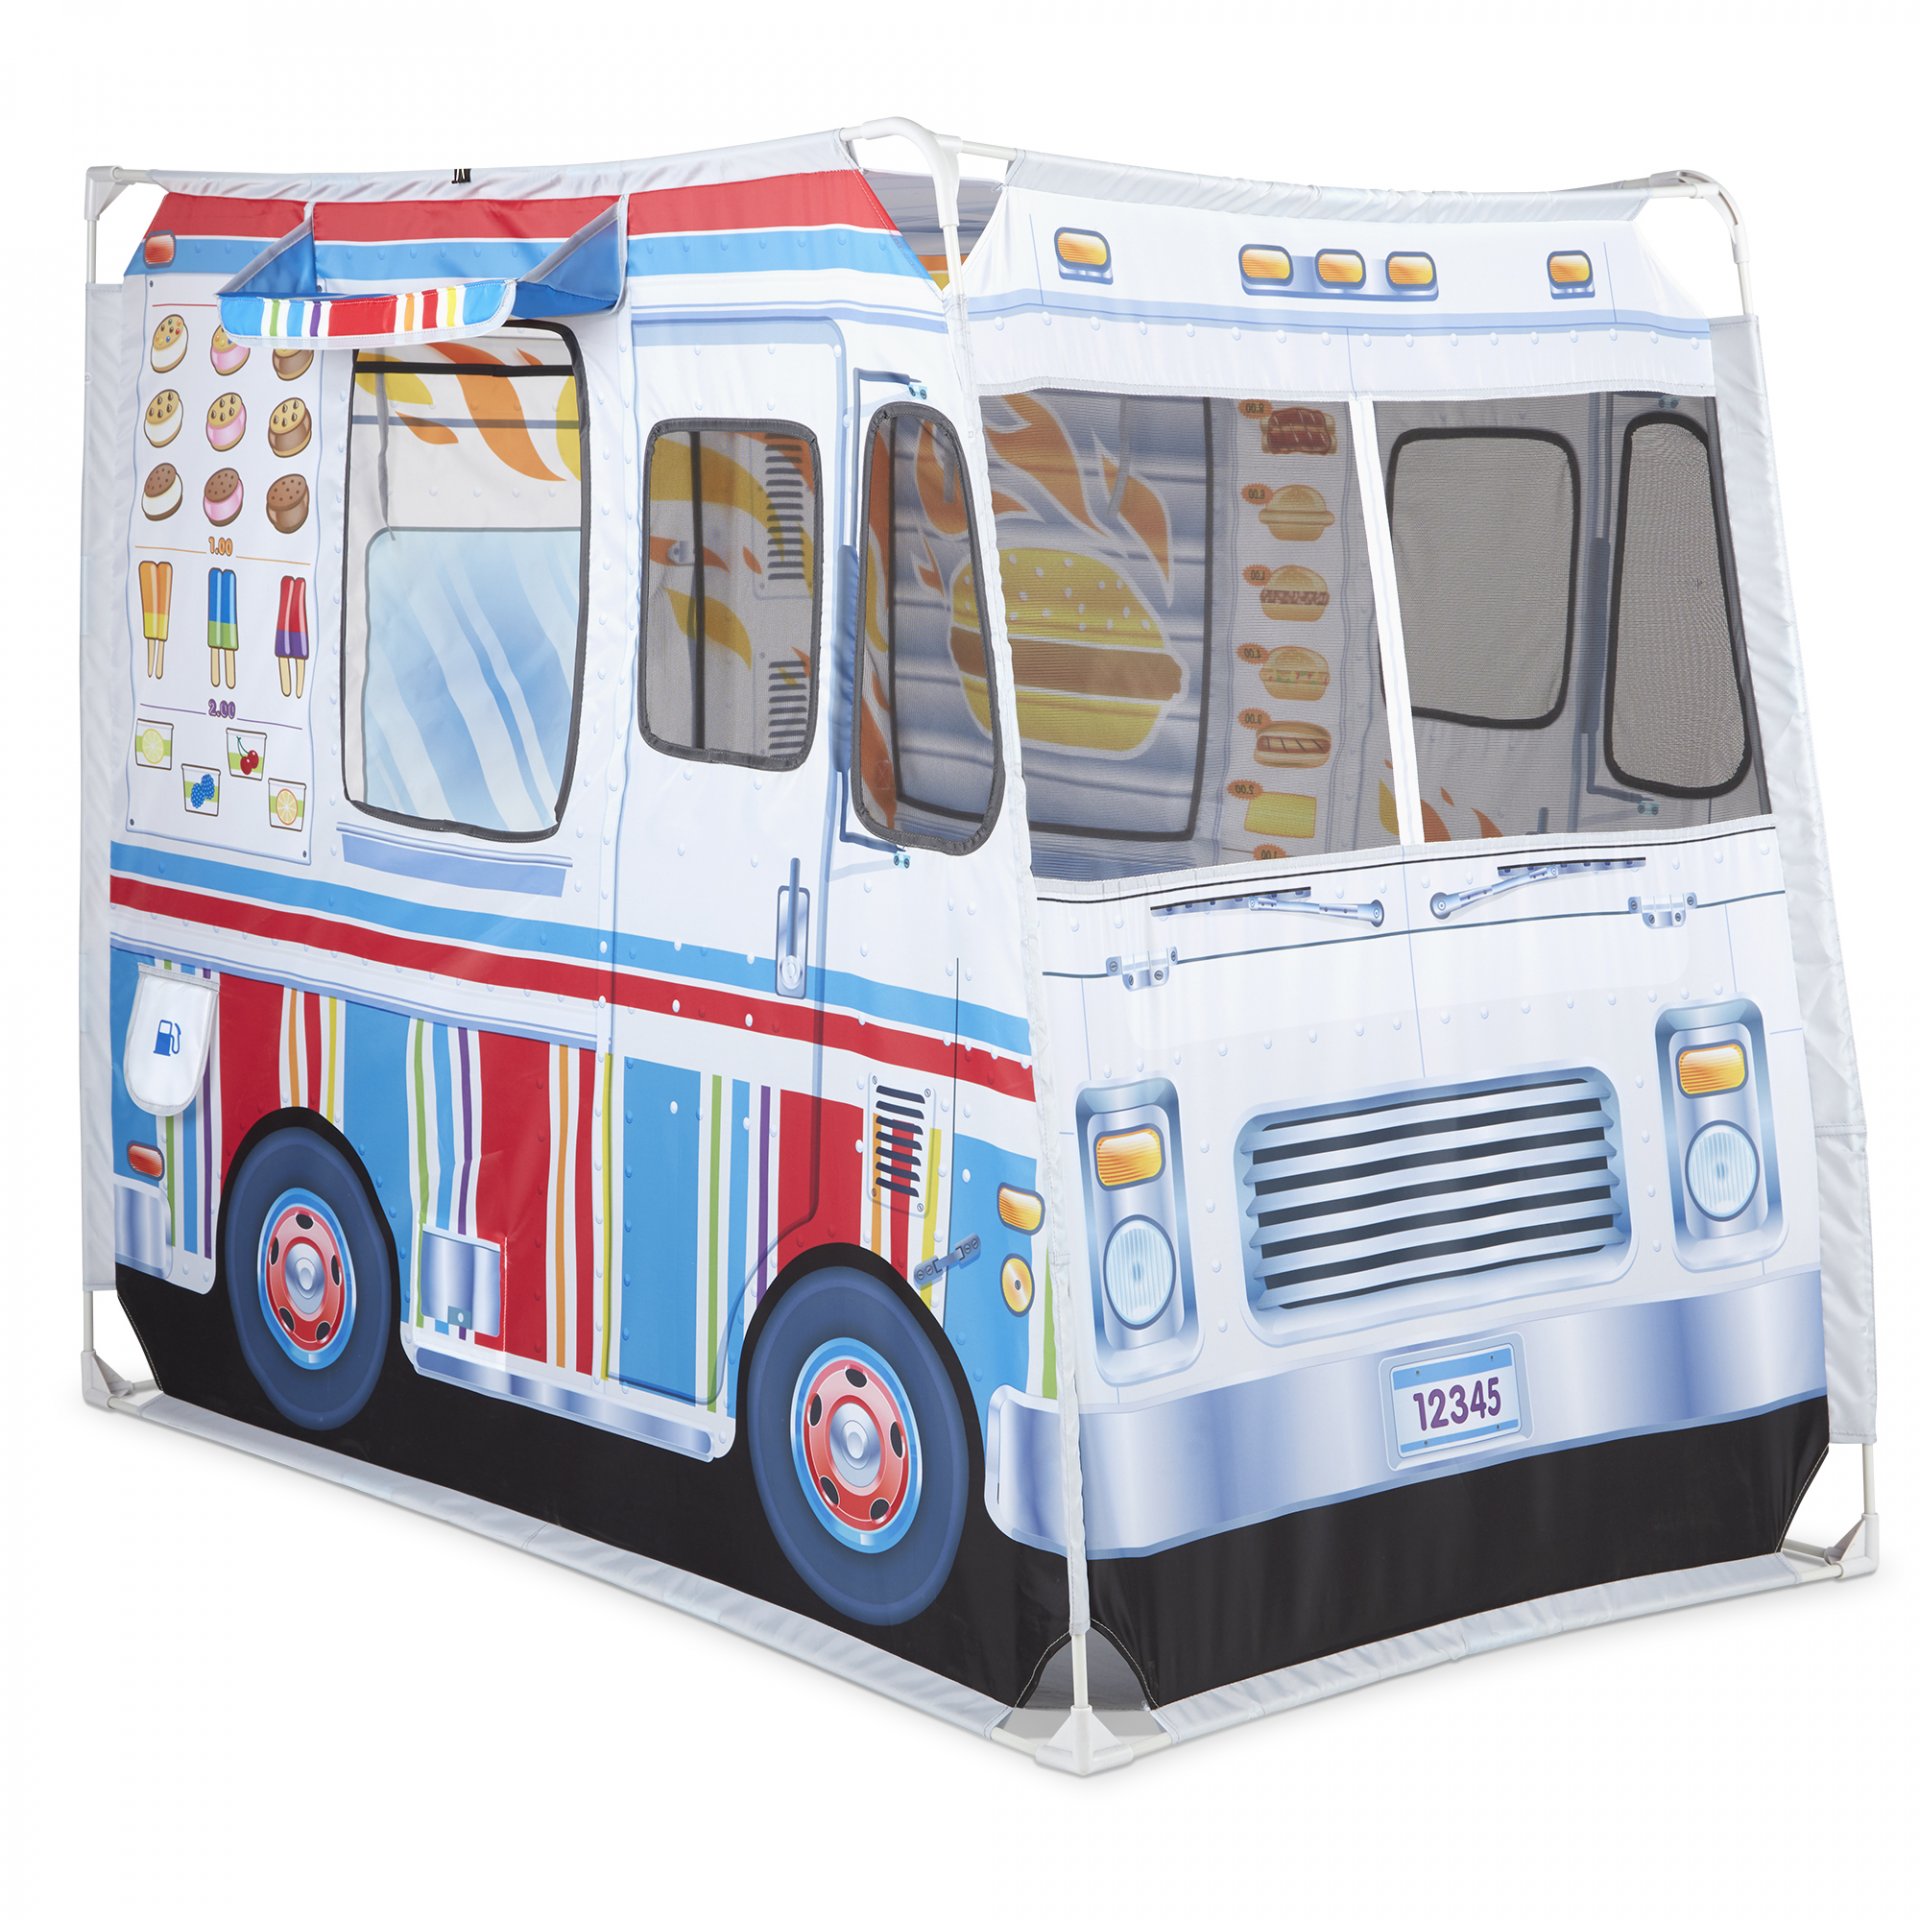 [เต๊นป๊อปอัพ] รุ่น 32101 ชุดเต๊นป๊อปอัพ Food Cart โครงเหล็ก พับเก็บได้  Melissa & Doug Food Truck Play Tent